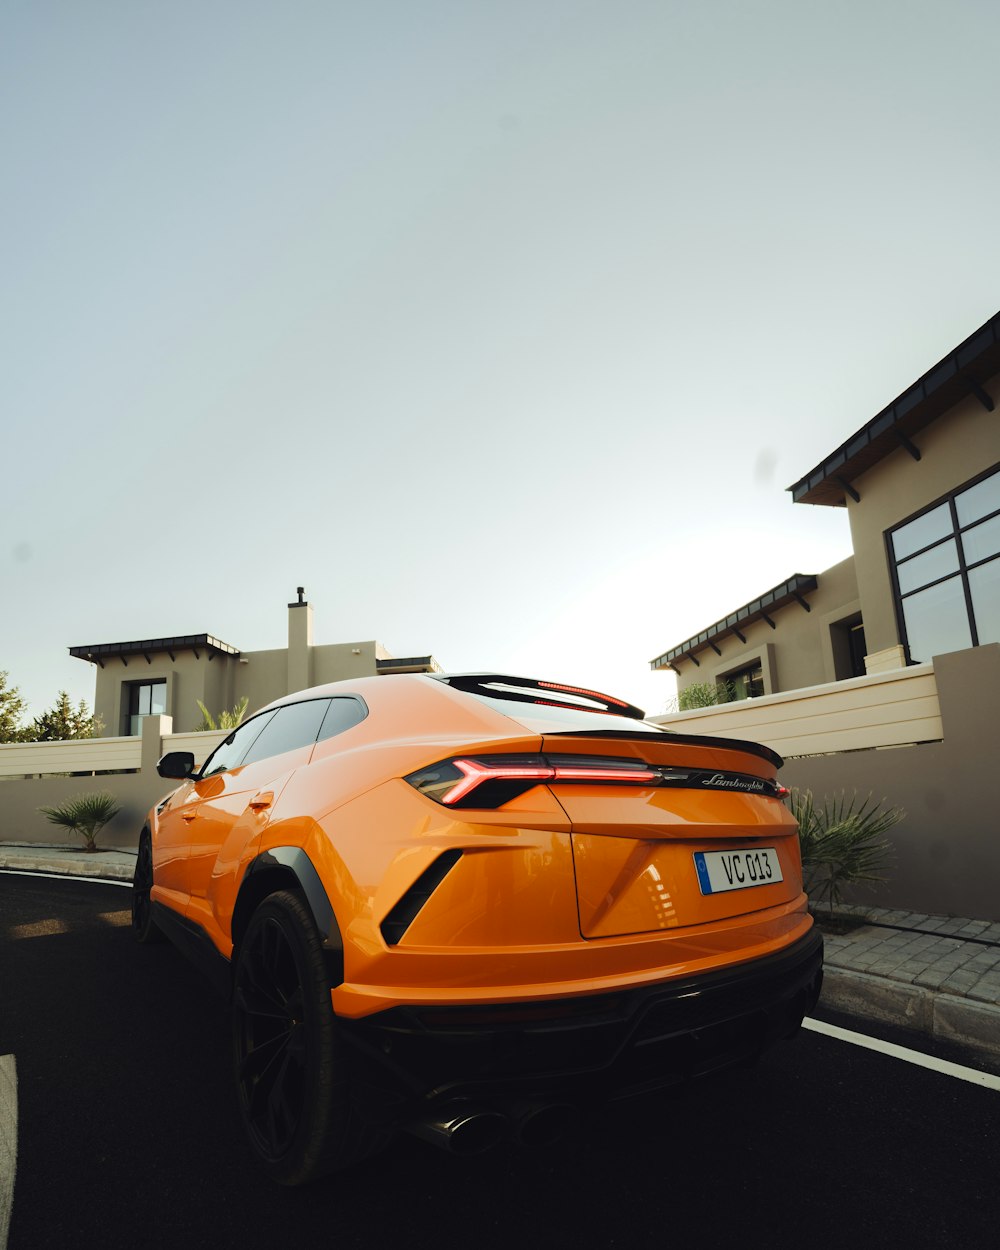 Ein orangefarbener Sportwagen fährt eine Straße entlang